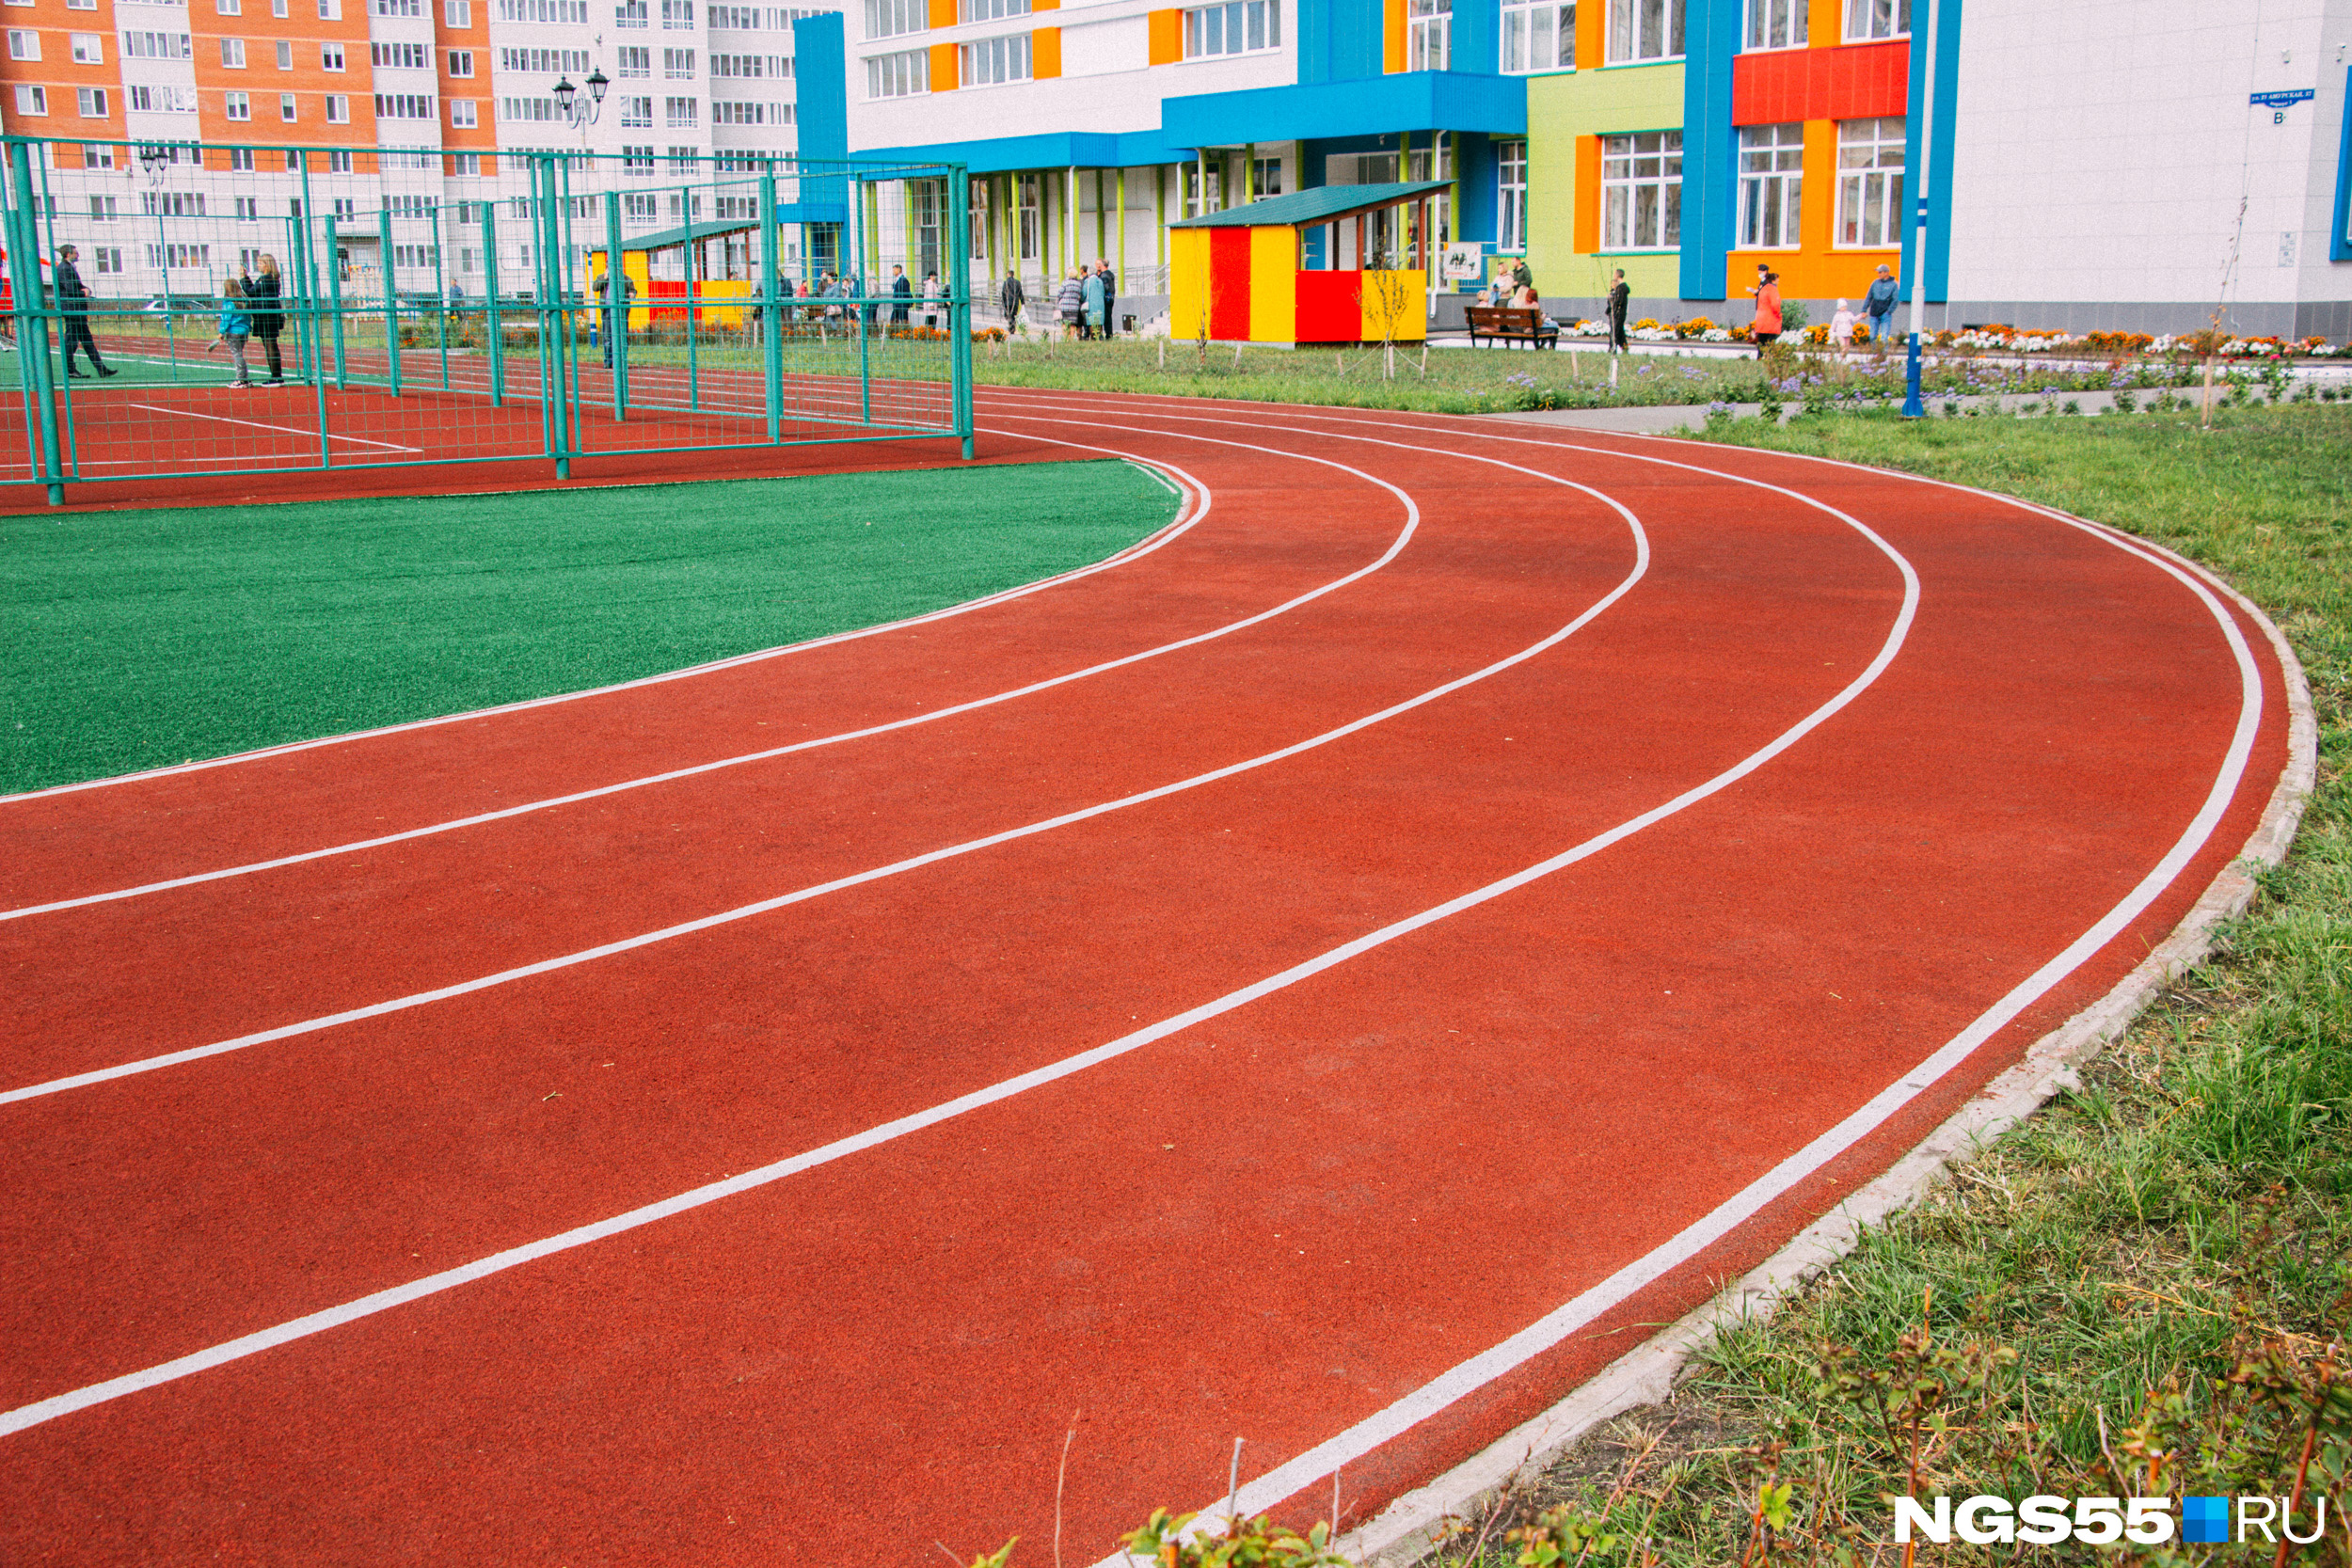 На пришкольной территории несколько спортивных площадок, в том числе прорезиненные беговые дорожки вокруг футбольного стадиона